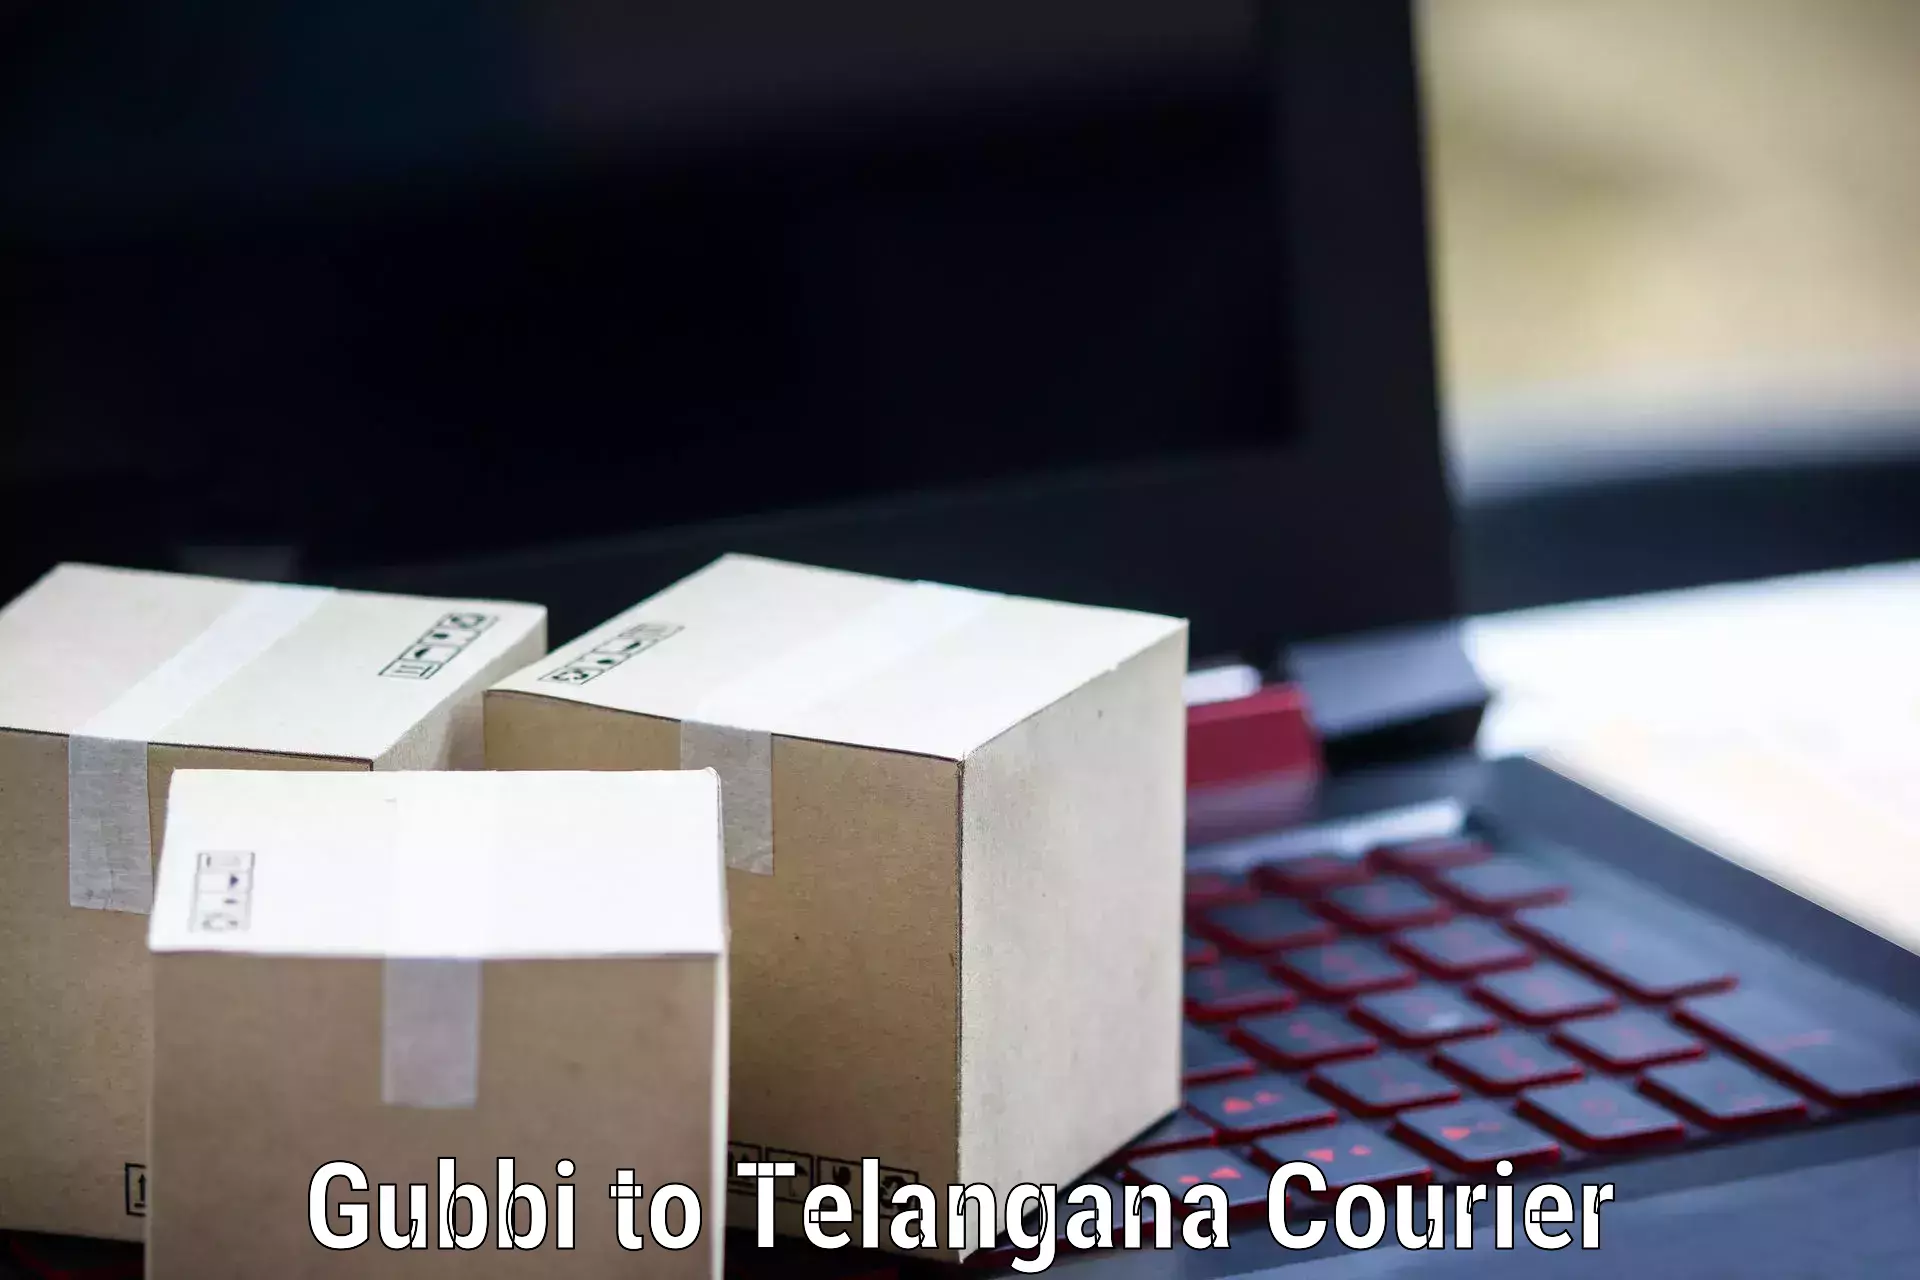 Business delivery service Gubbi to Odela